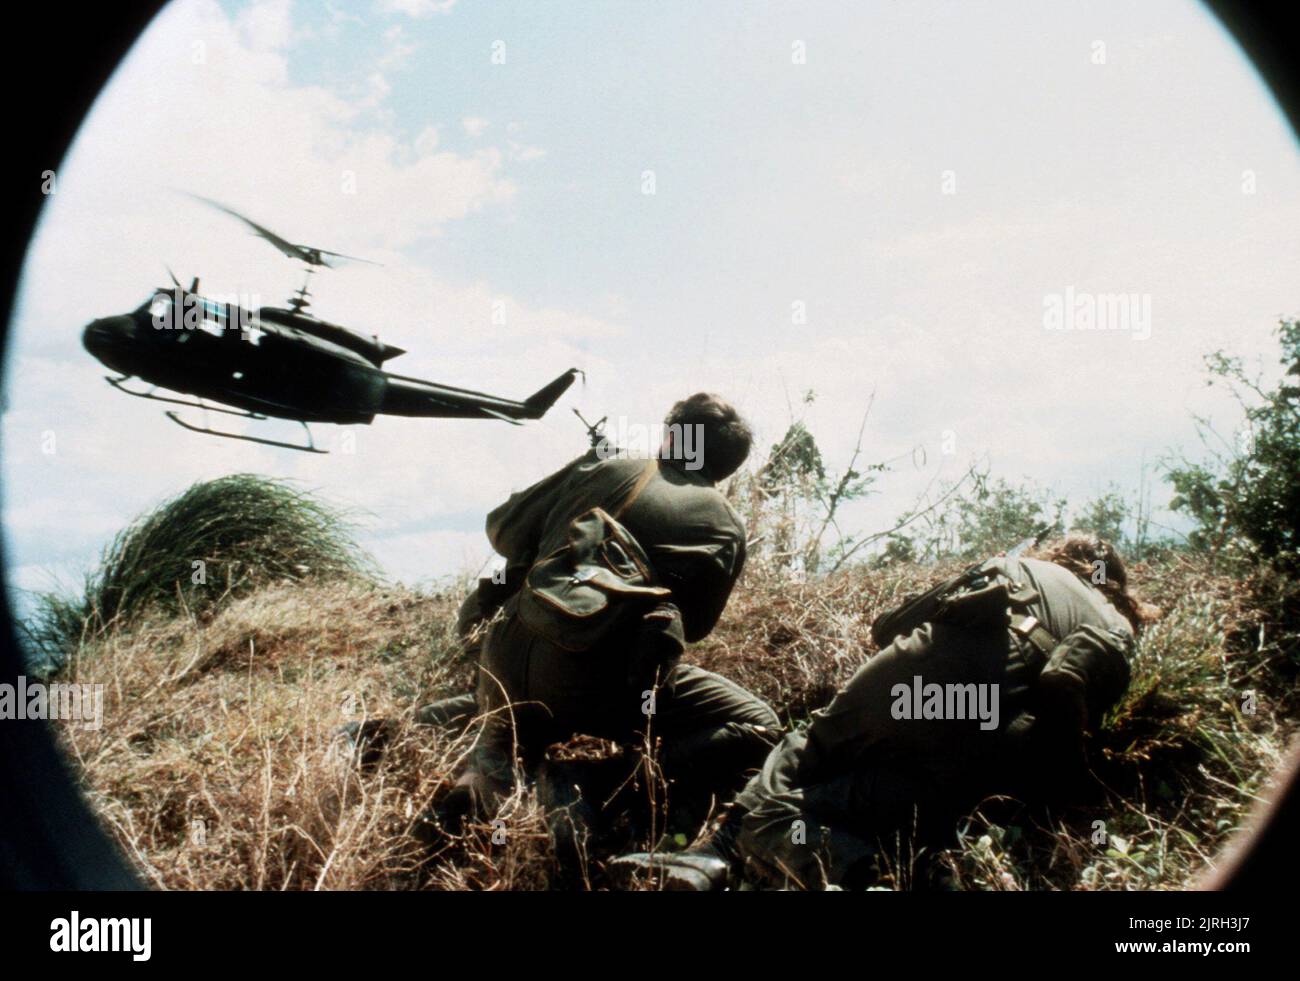 WAR SCENE, OPPOSING FORCE, 1986 Stock Photo